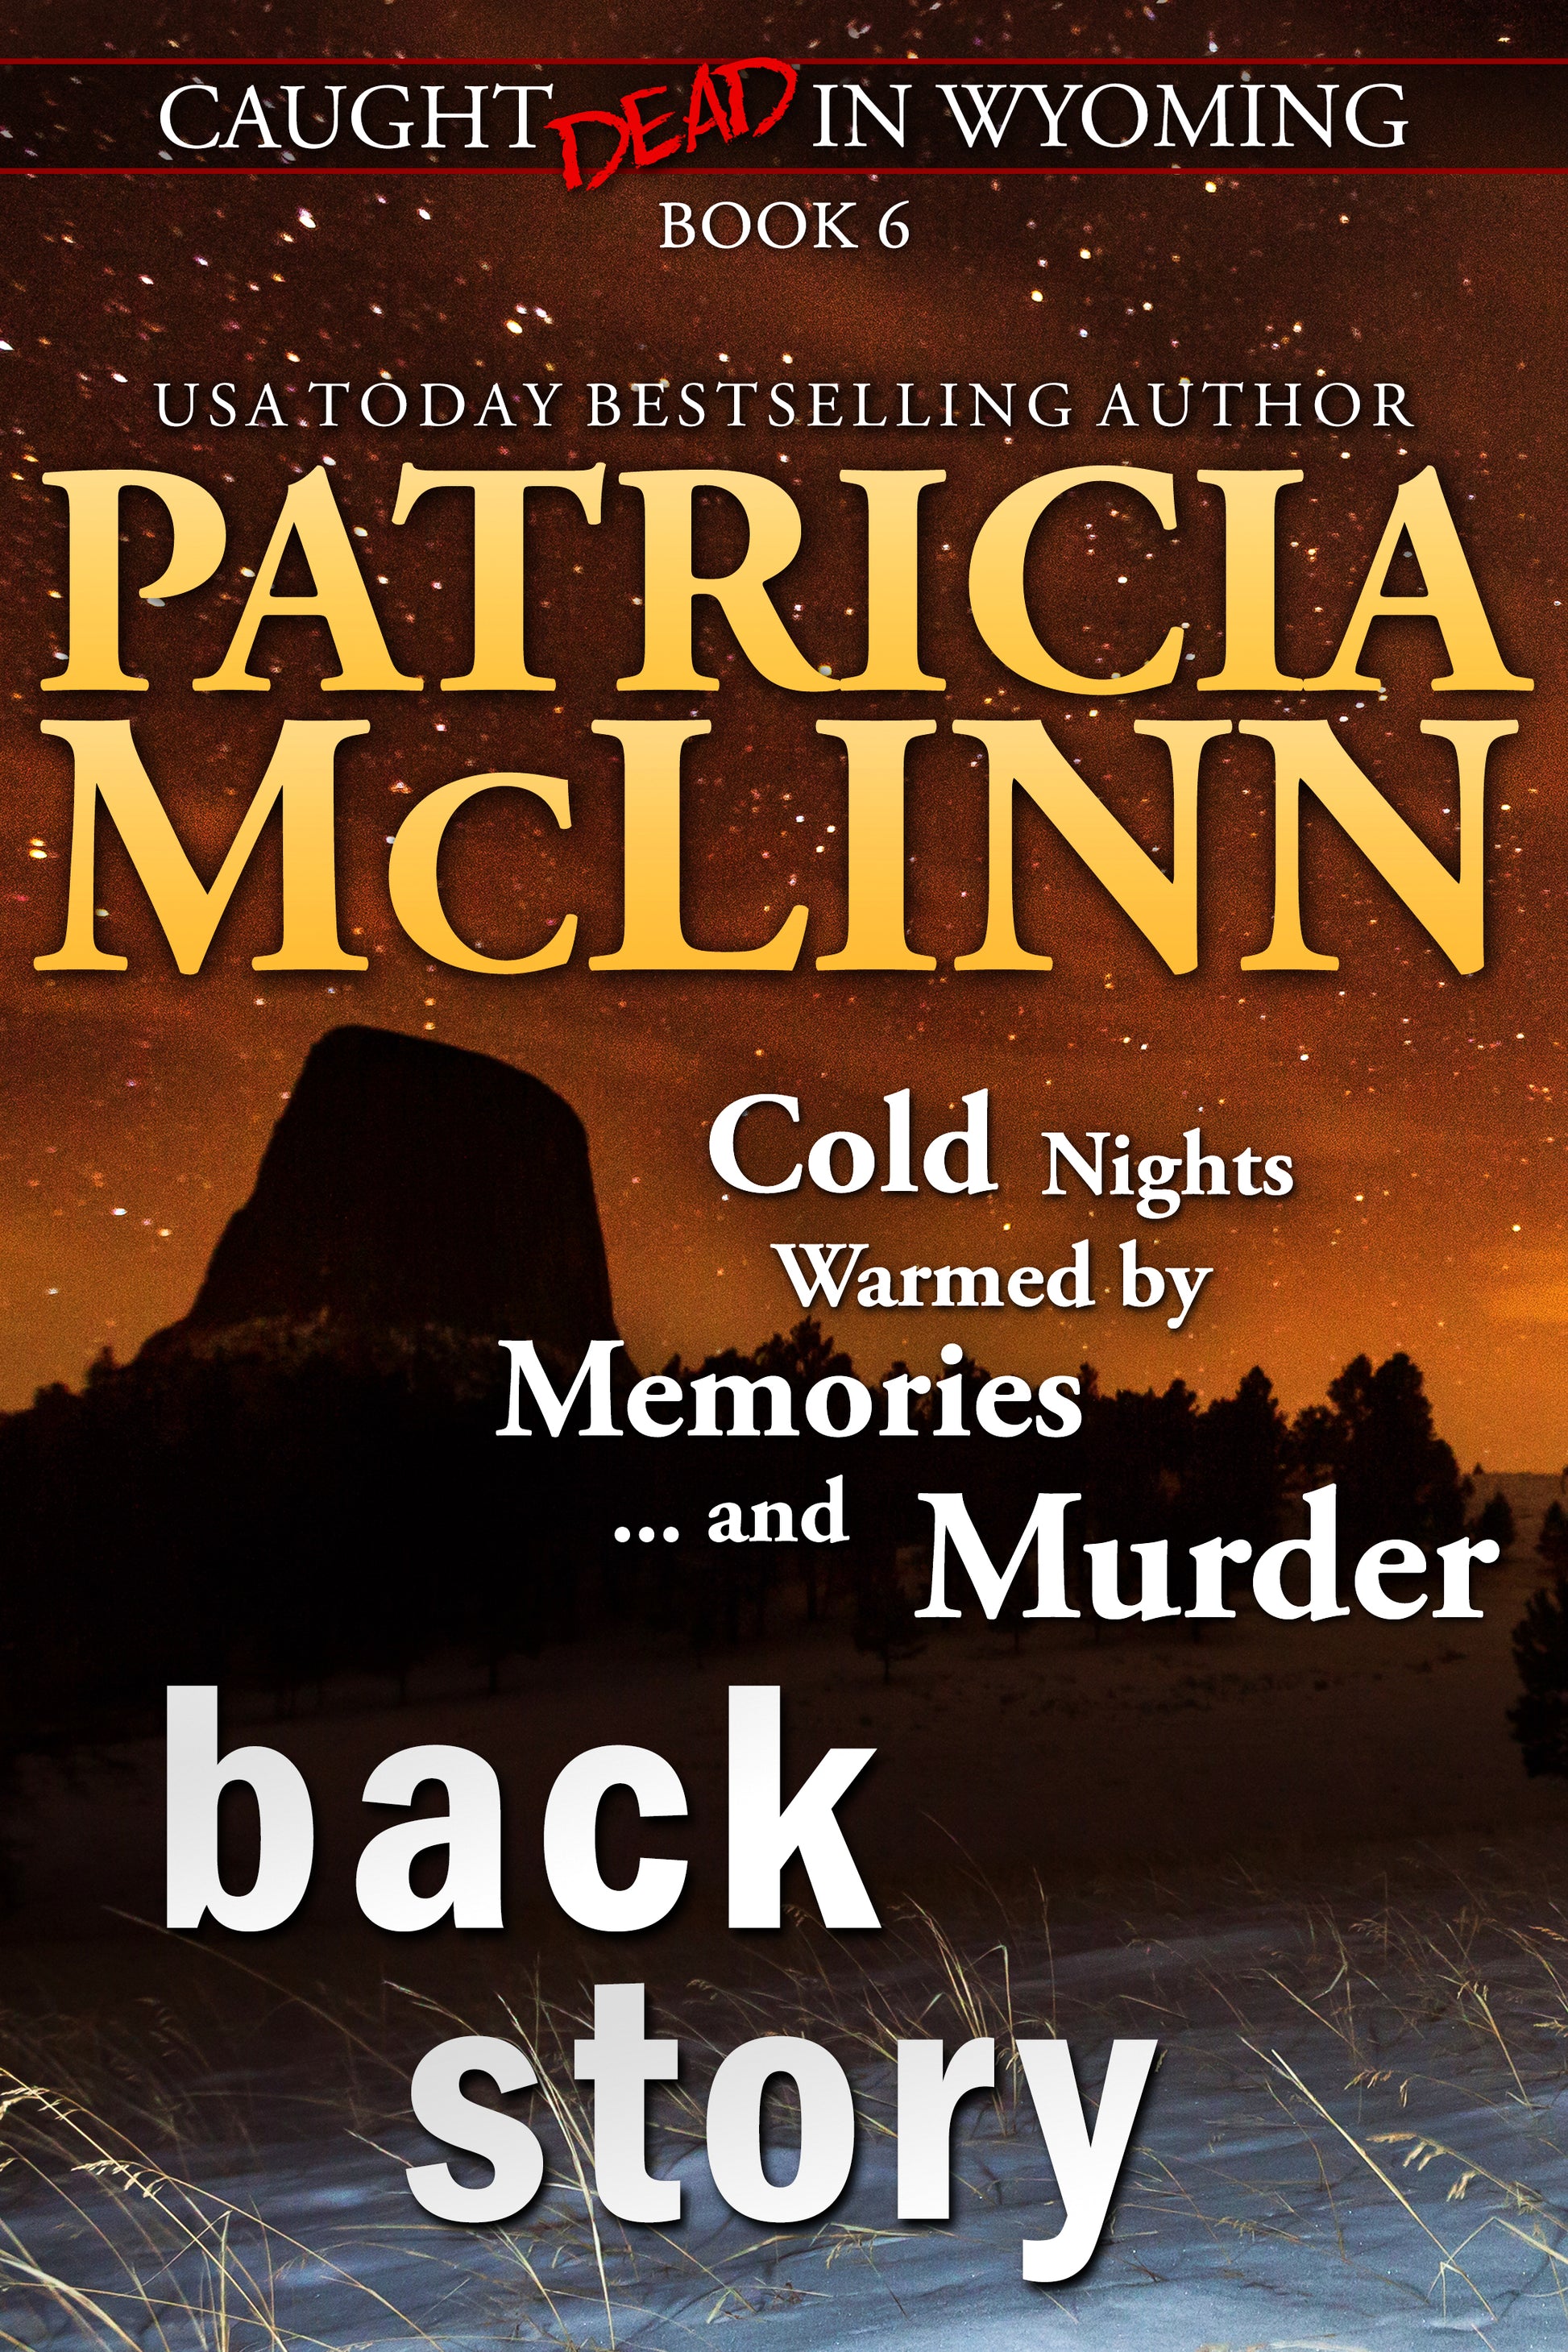 Back Story - Patricia McLinn